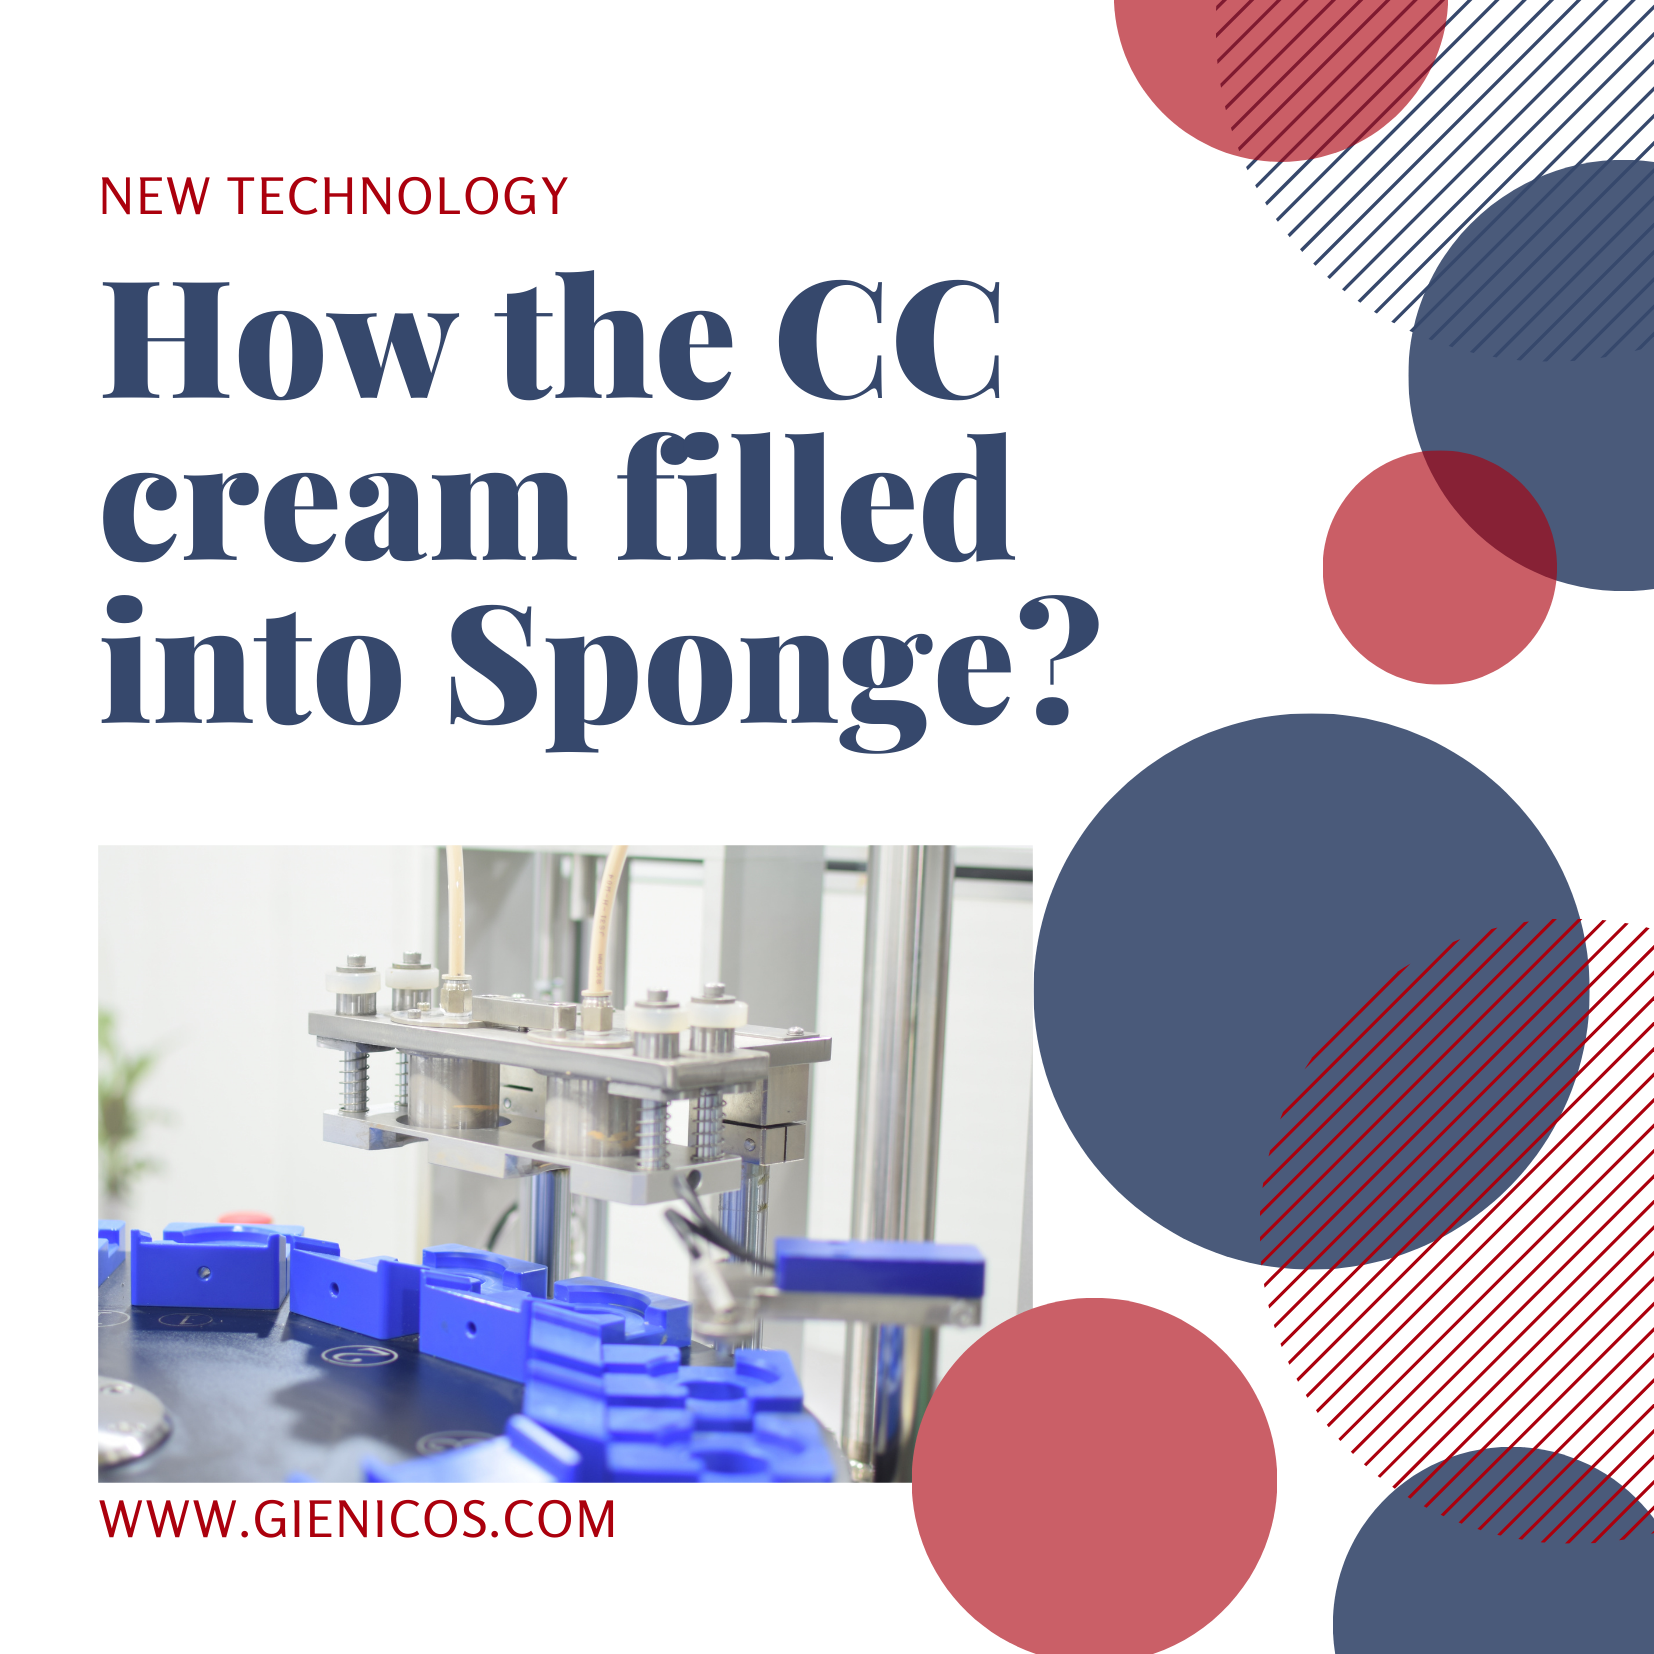 כיצד התמלא ה-CC Cream לתוך הספוג מהו הקרם CC?